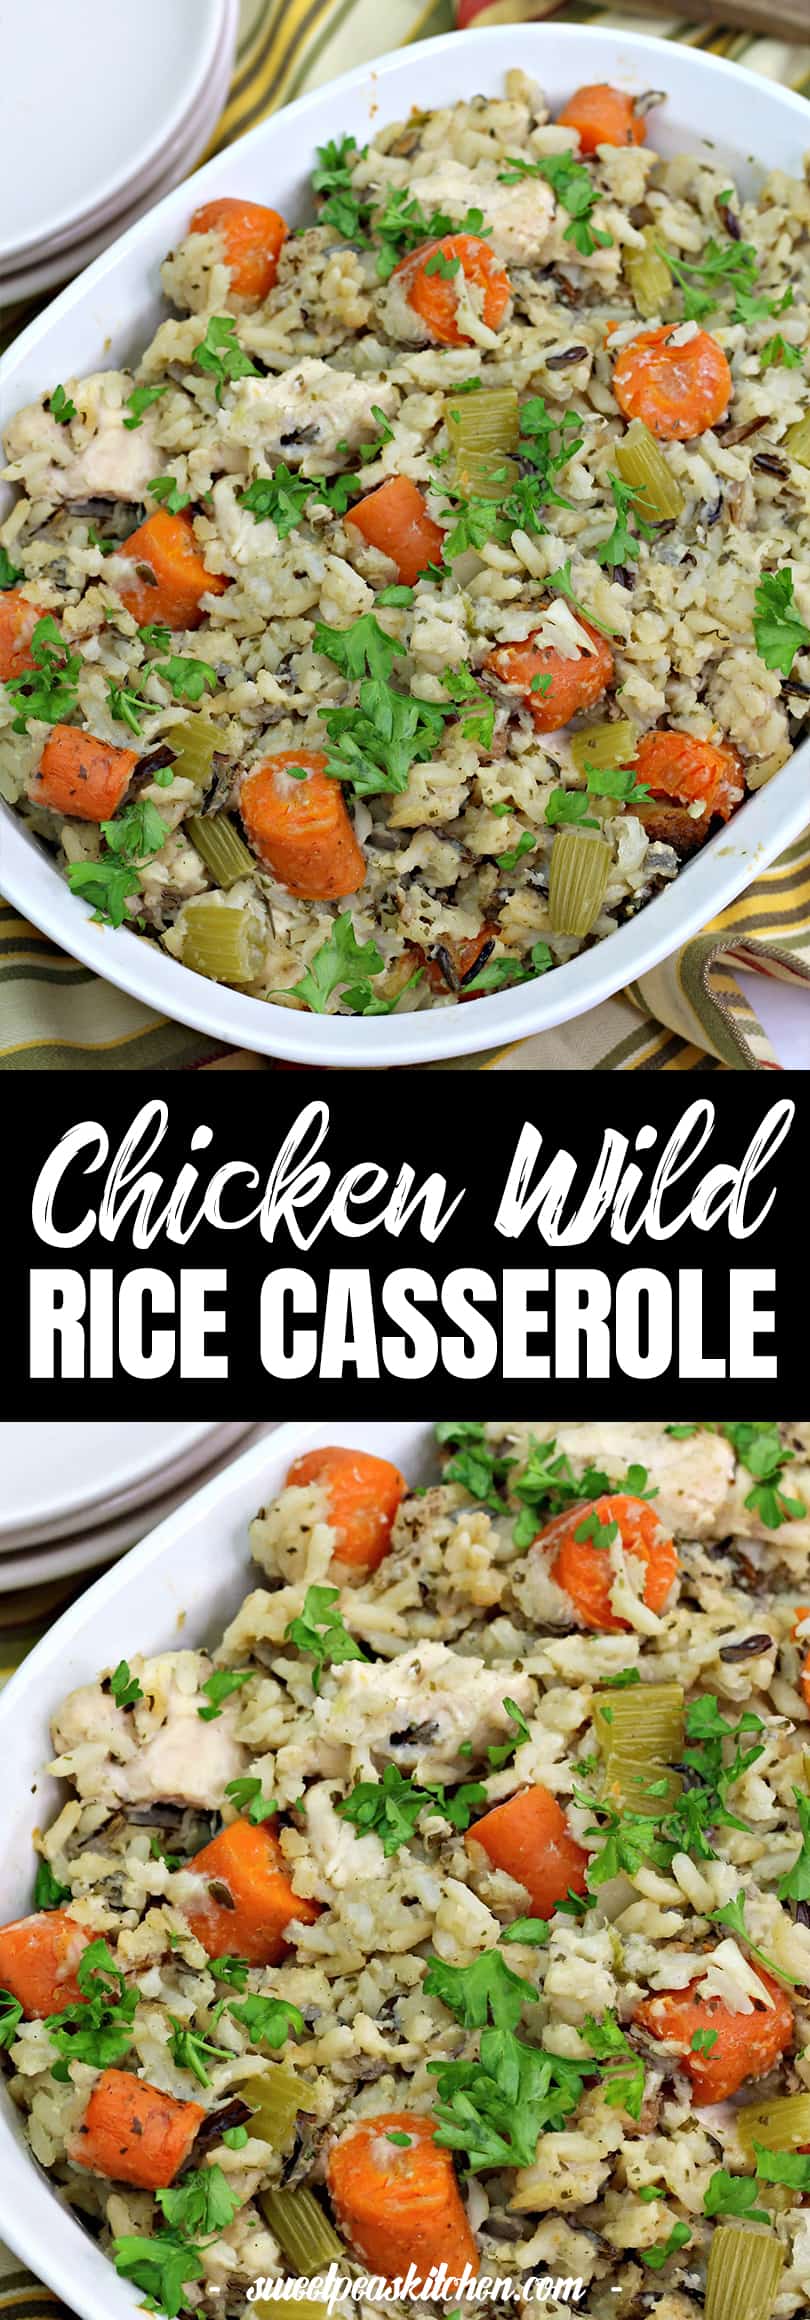 Chicken Wild Rice Casserole Recipe